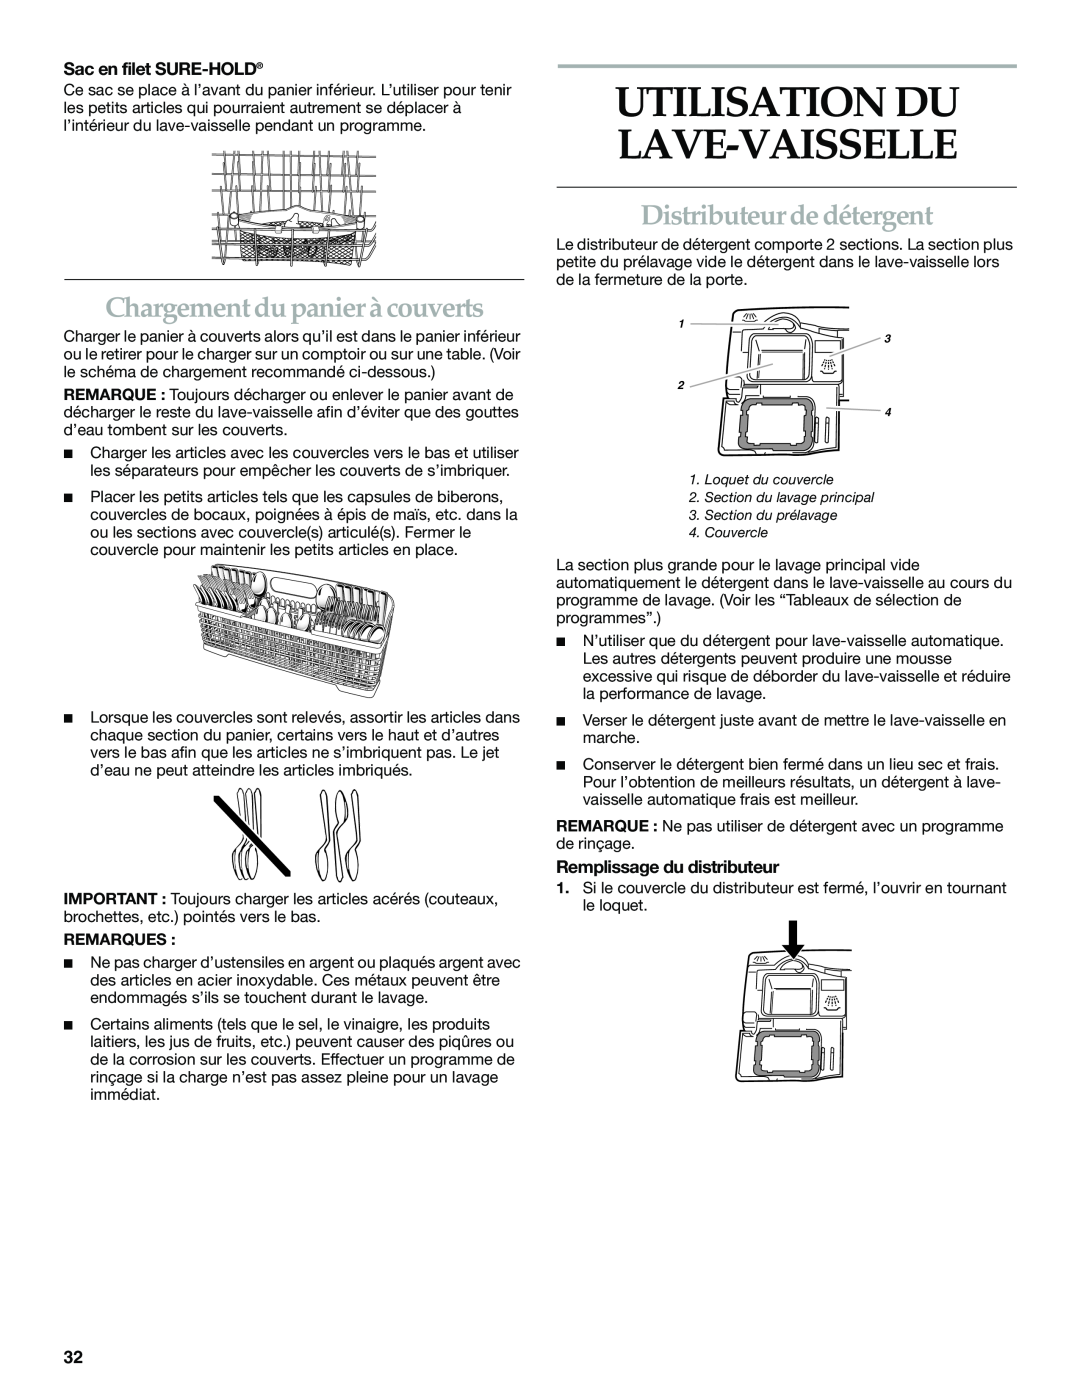 KitchenAid KUDS01VM manual Chargement du panier à couverts, Distributeur de détergent, Sac en filet SURE-HOLD, Remarques 